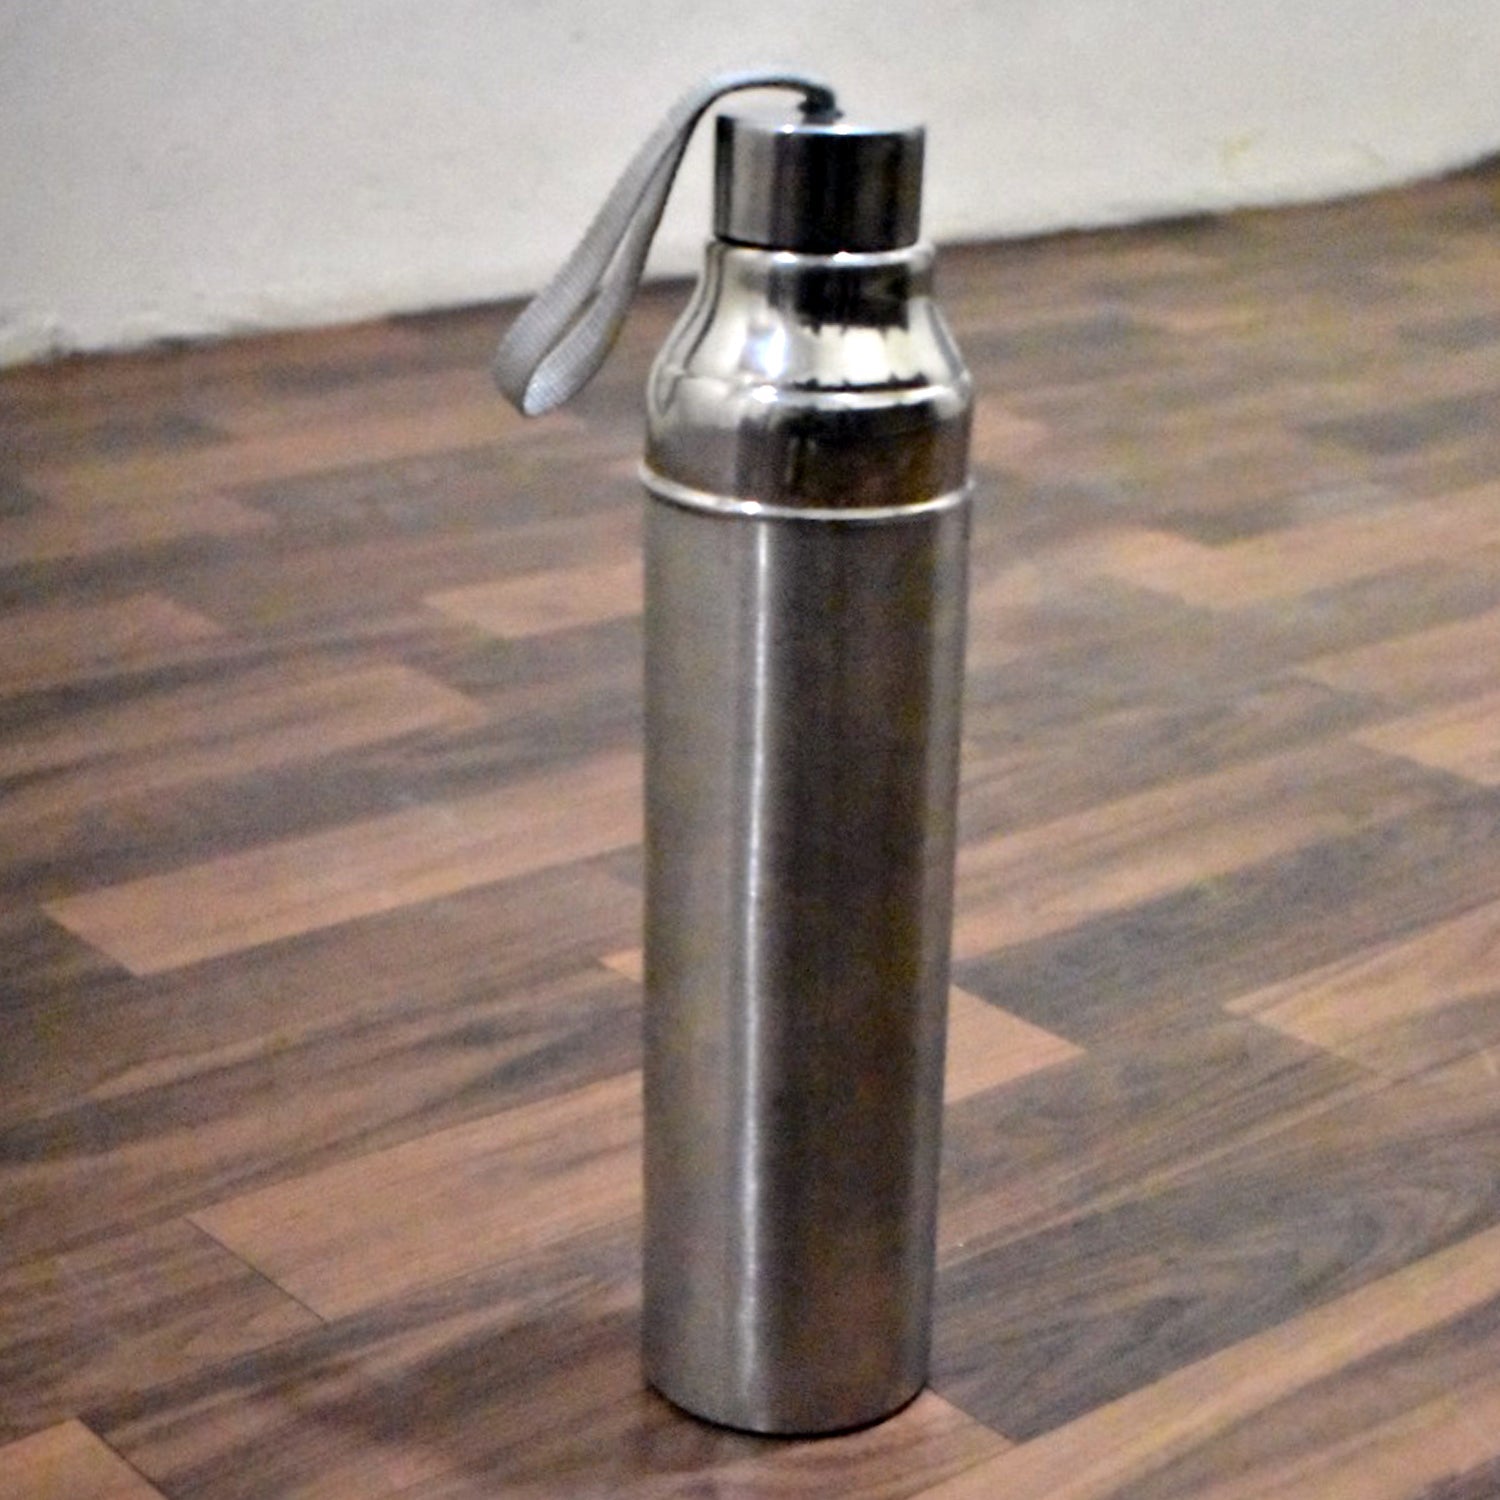 6194 Stainless steel Water bottle, 500ml, DeoDap